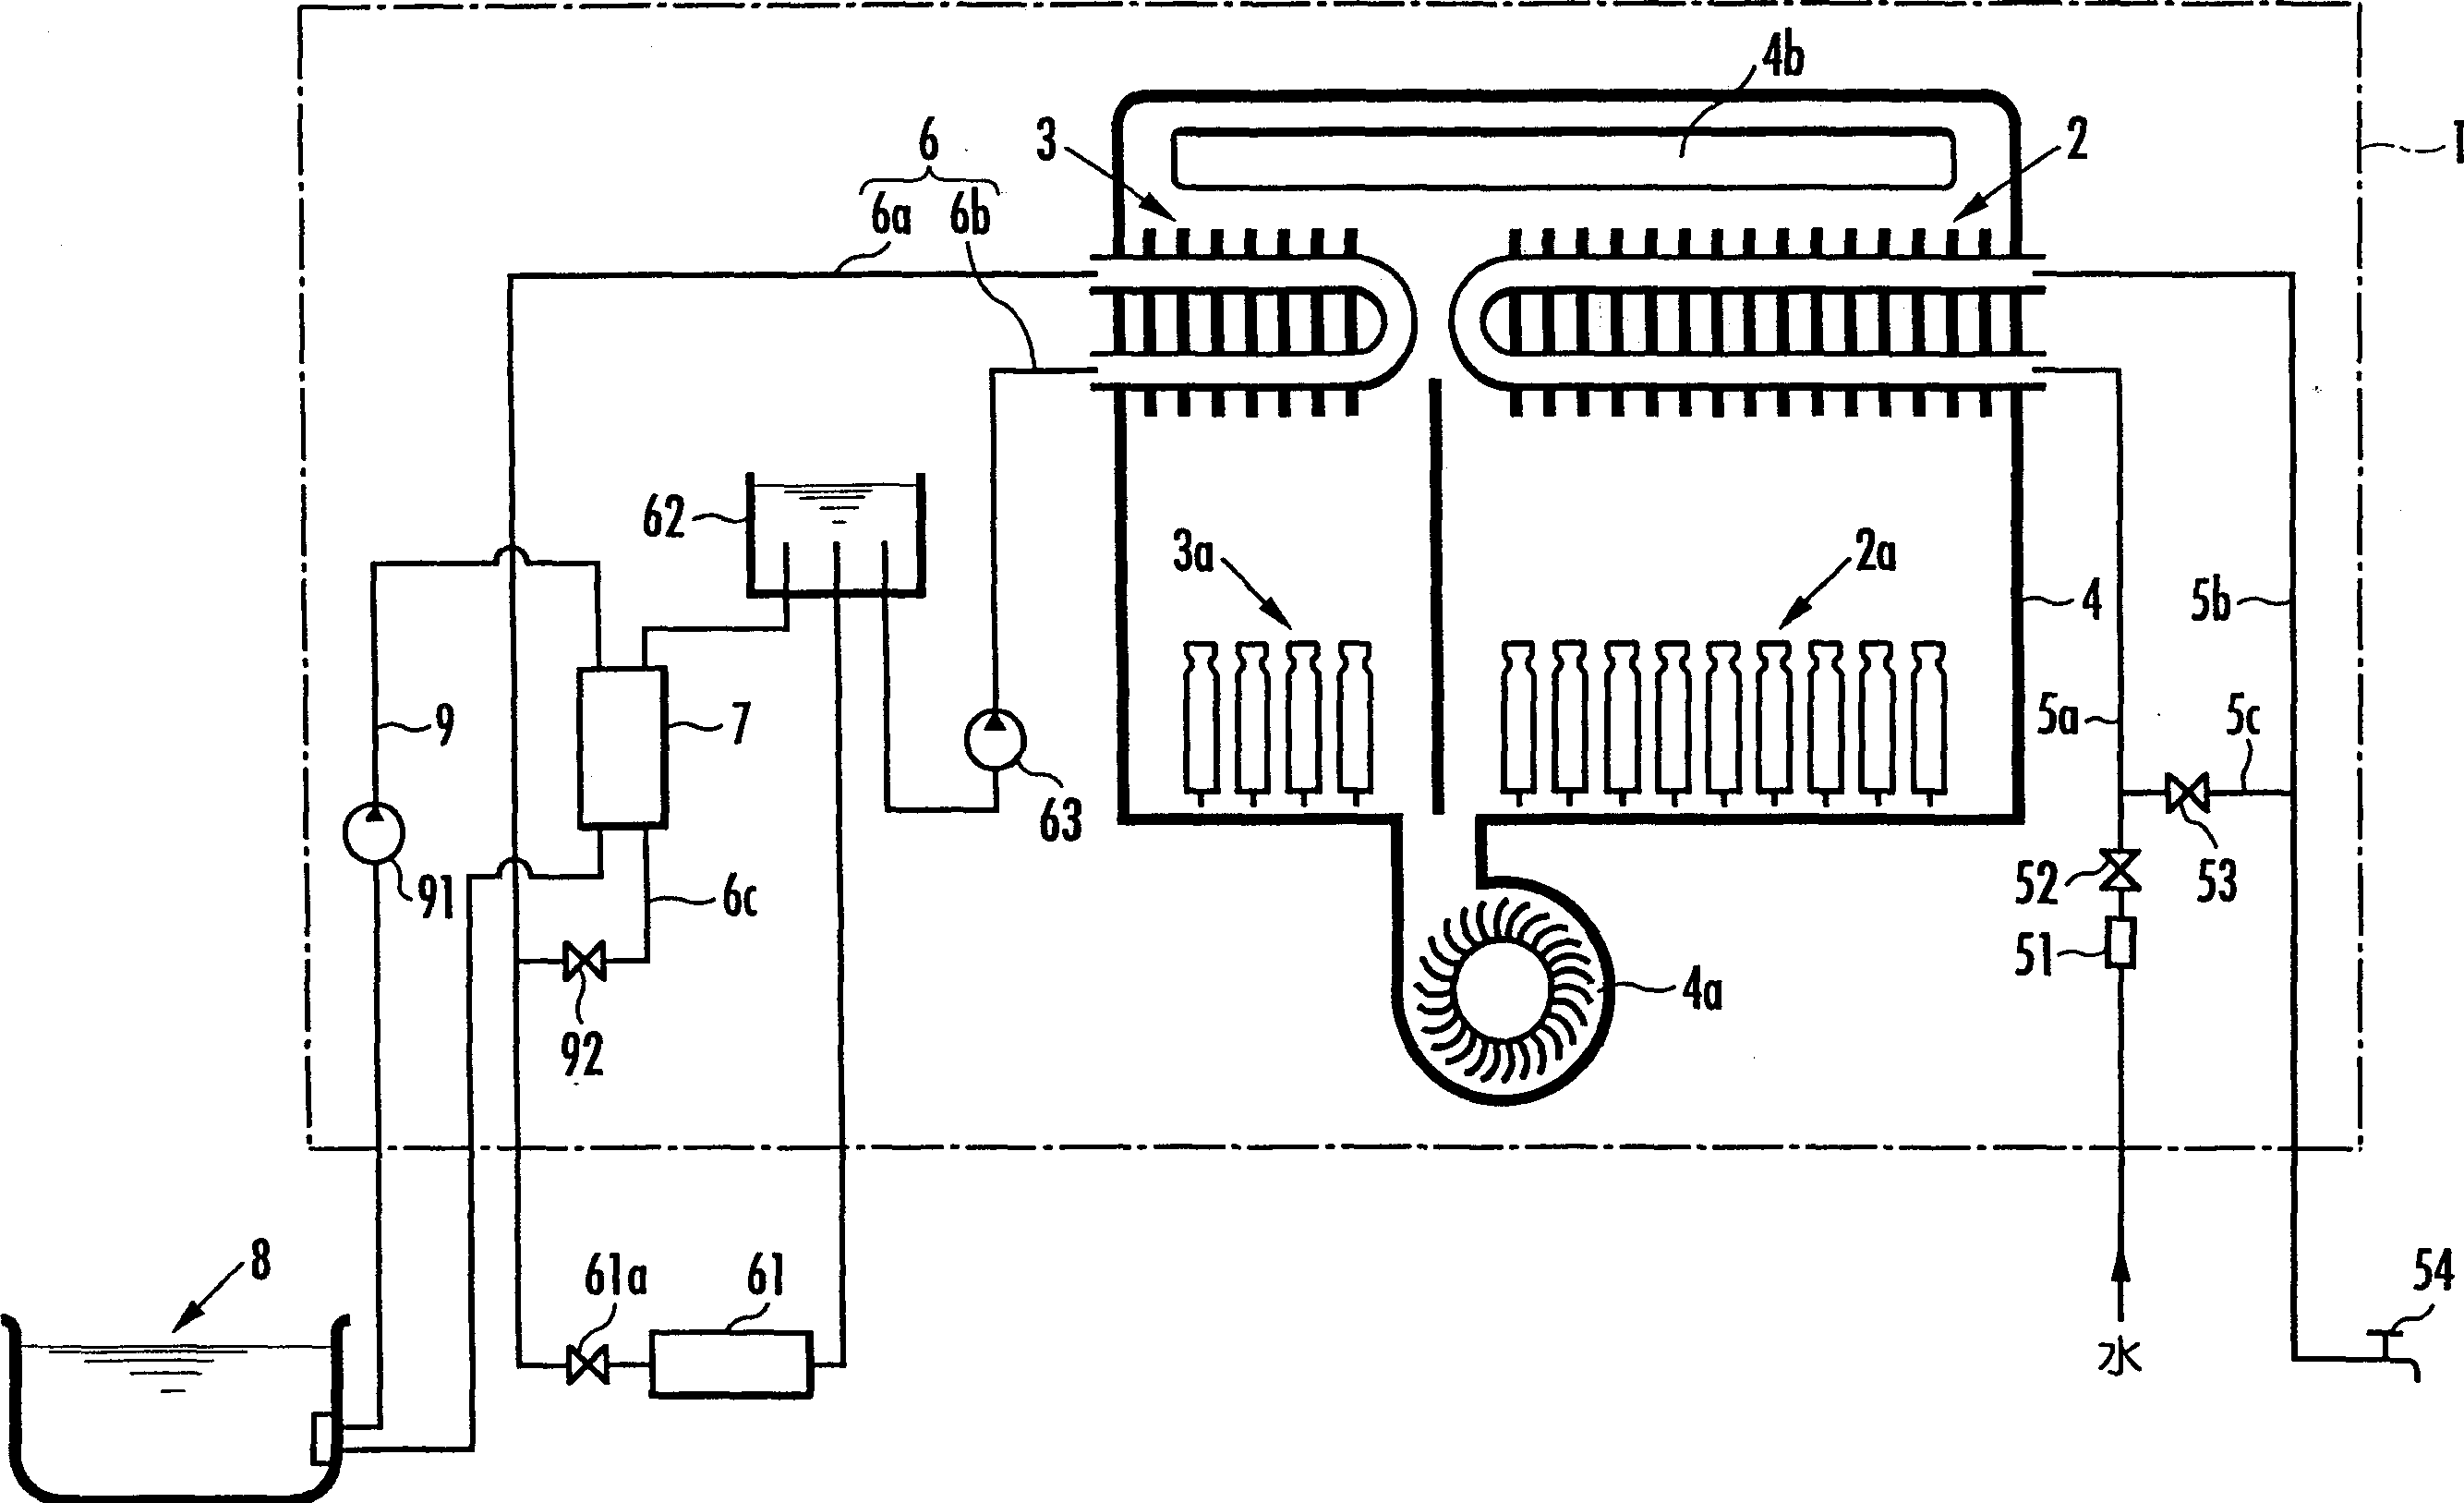 Liquid-liquid heat exchanger